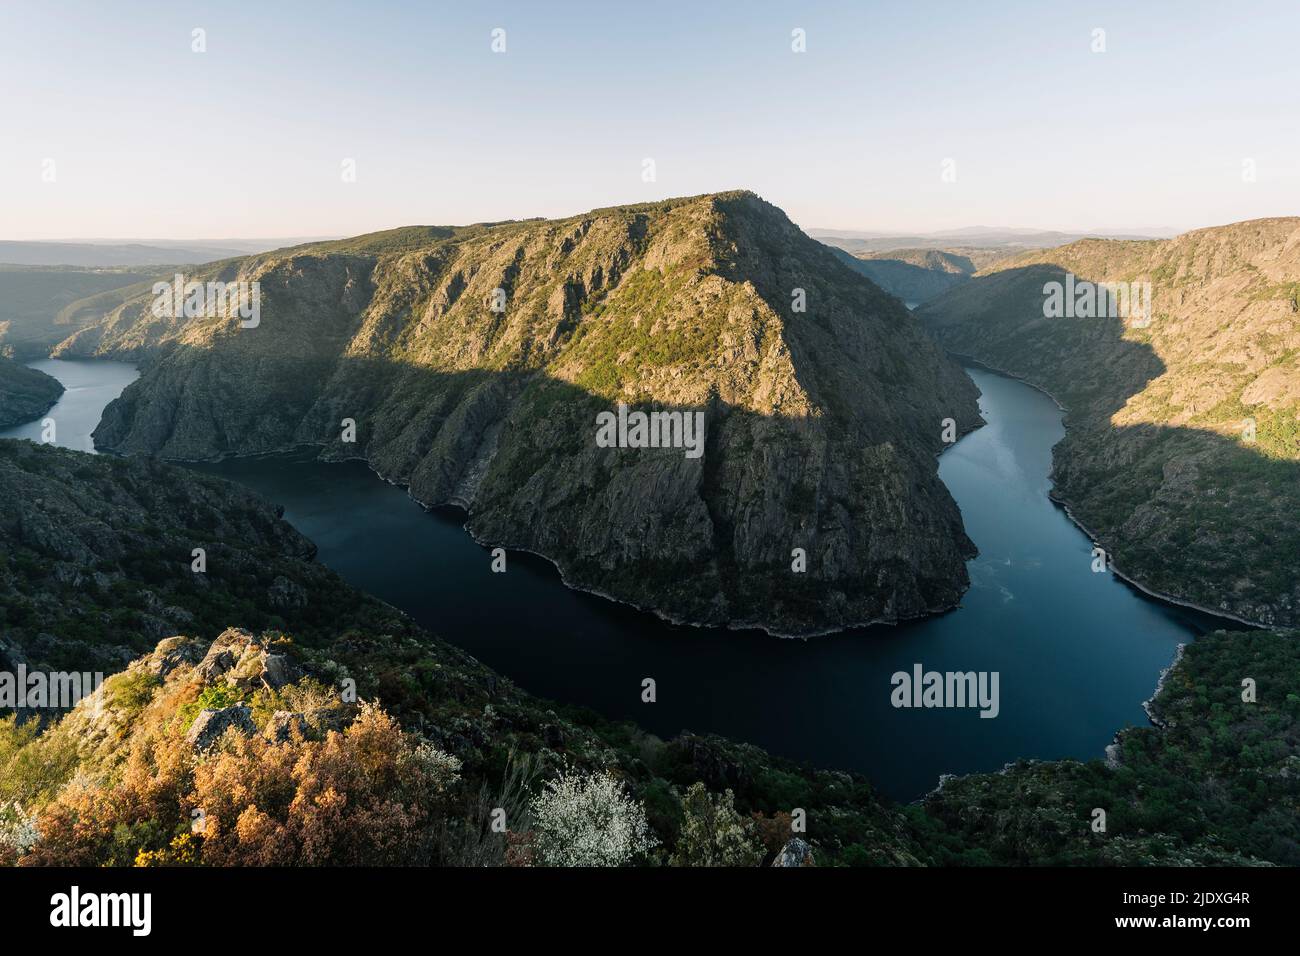 Landschaftlich schöner Blick auf den Fluss Sil inmitten von Bergketten Stockfoto